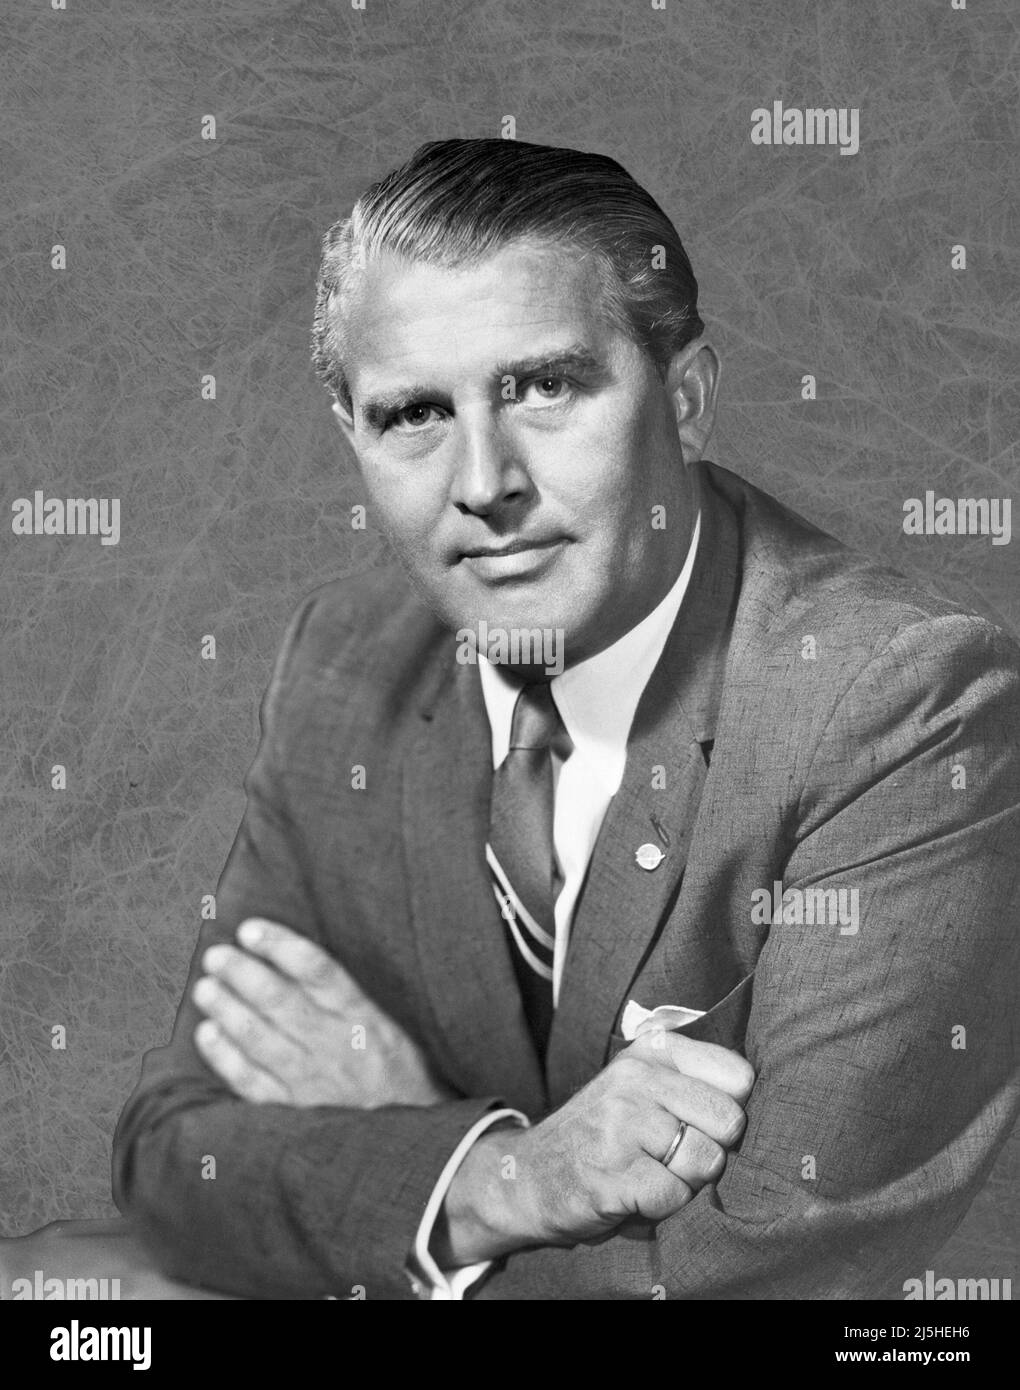 Ein Porträt von Dr. Wernher von Braun aus dem Jahr 1960. Nach dem Zweiten Weltkrieg kamen Dr. von Braun und seine deutschen Kollegen im Rahmen des Projekts Paperclip in die Vereinigten Staaten, um ihre Raketenentwicklung fortzusetzen. Stockfoto